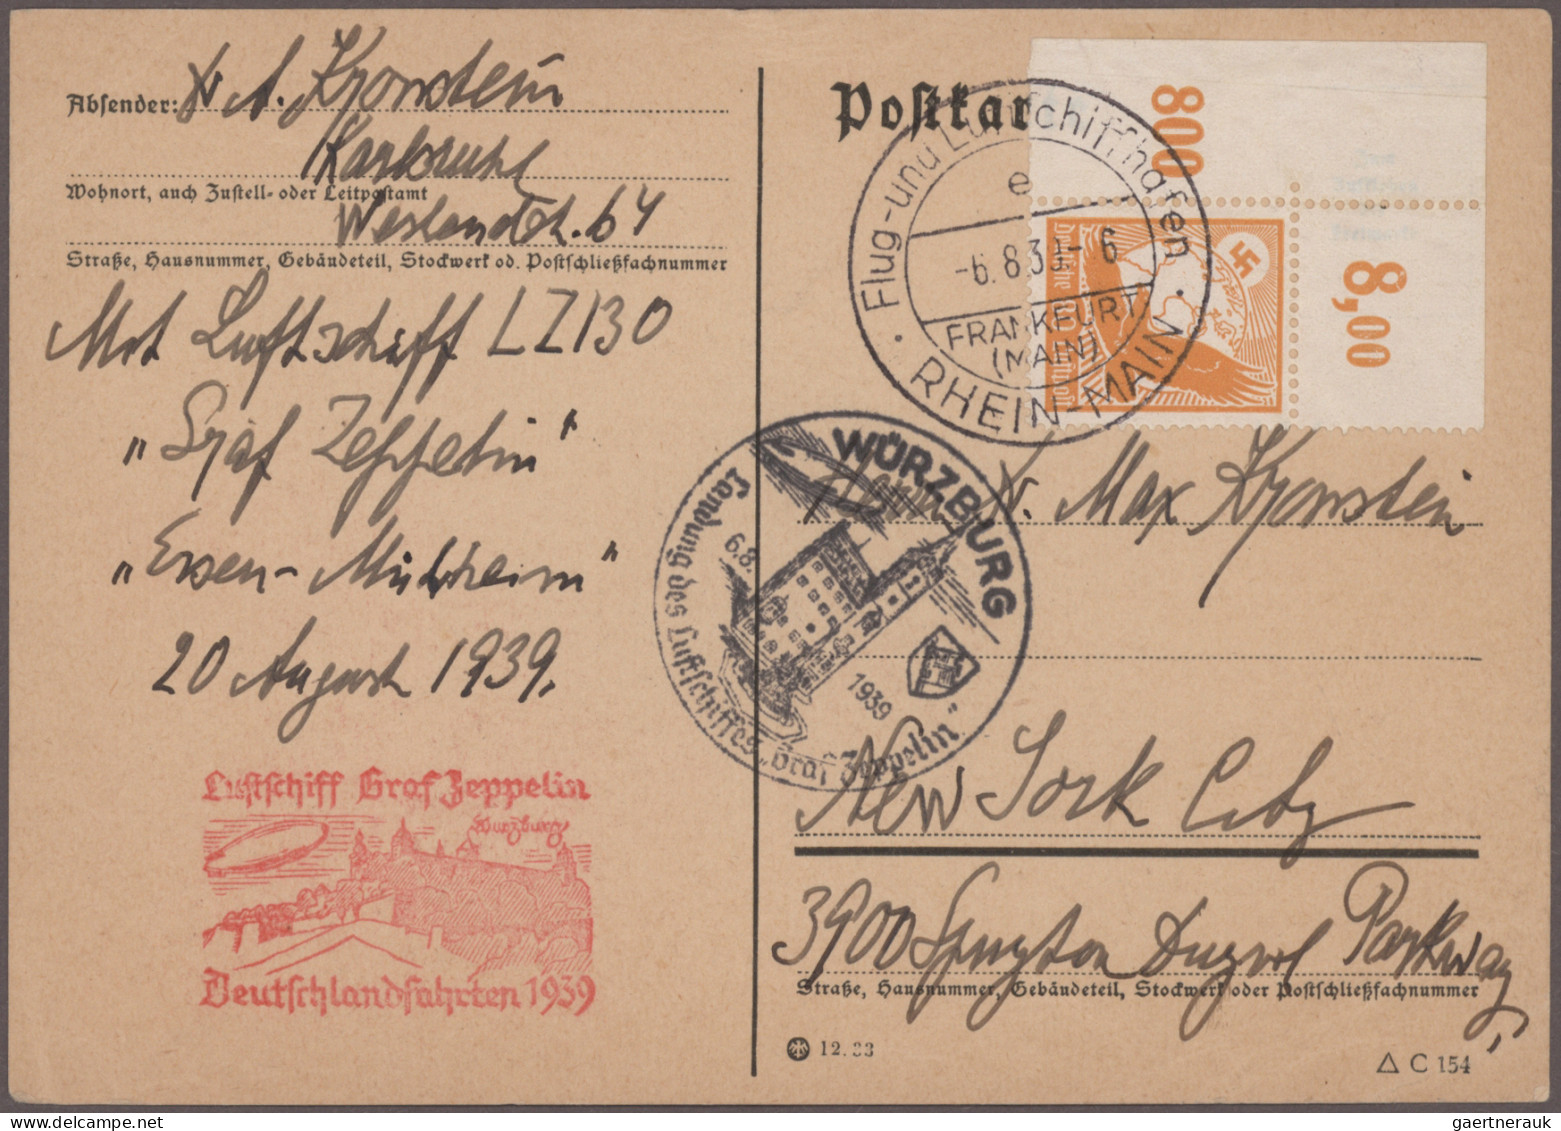 Deutschland: 1872 ab, Schachtel mit mehreren hundert Belegen ab Altdeutschland -